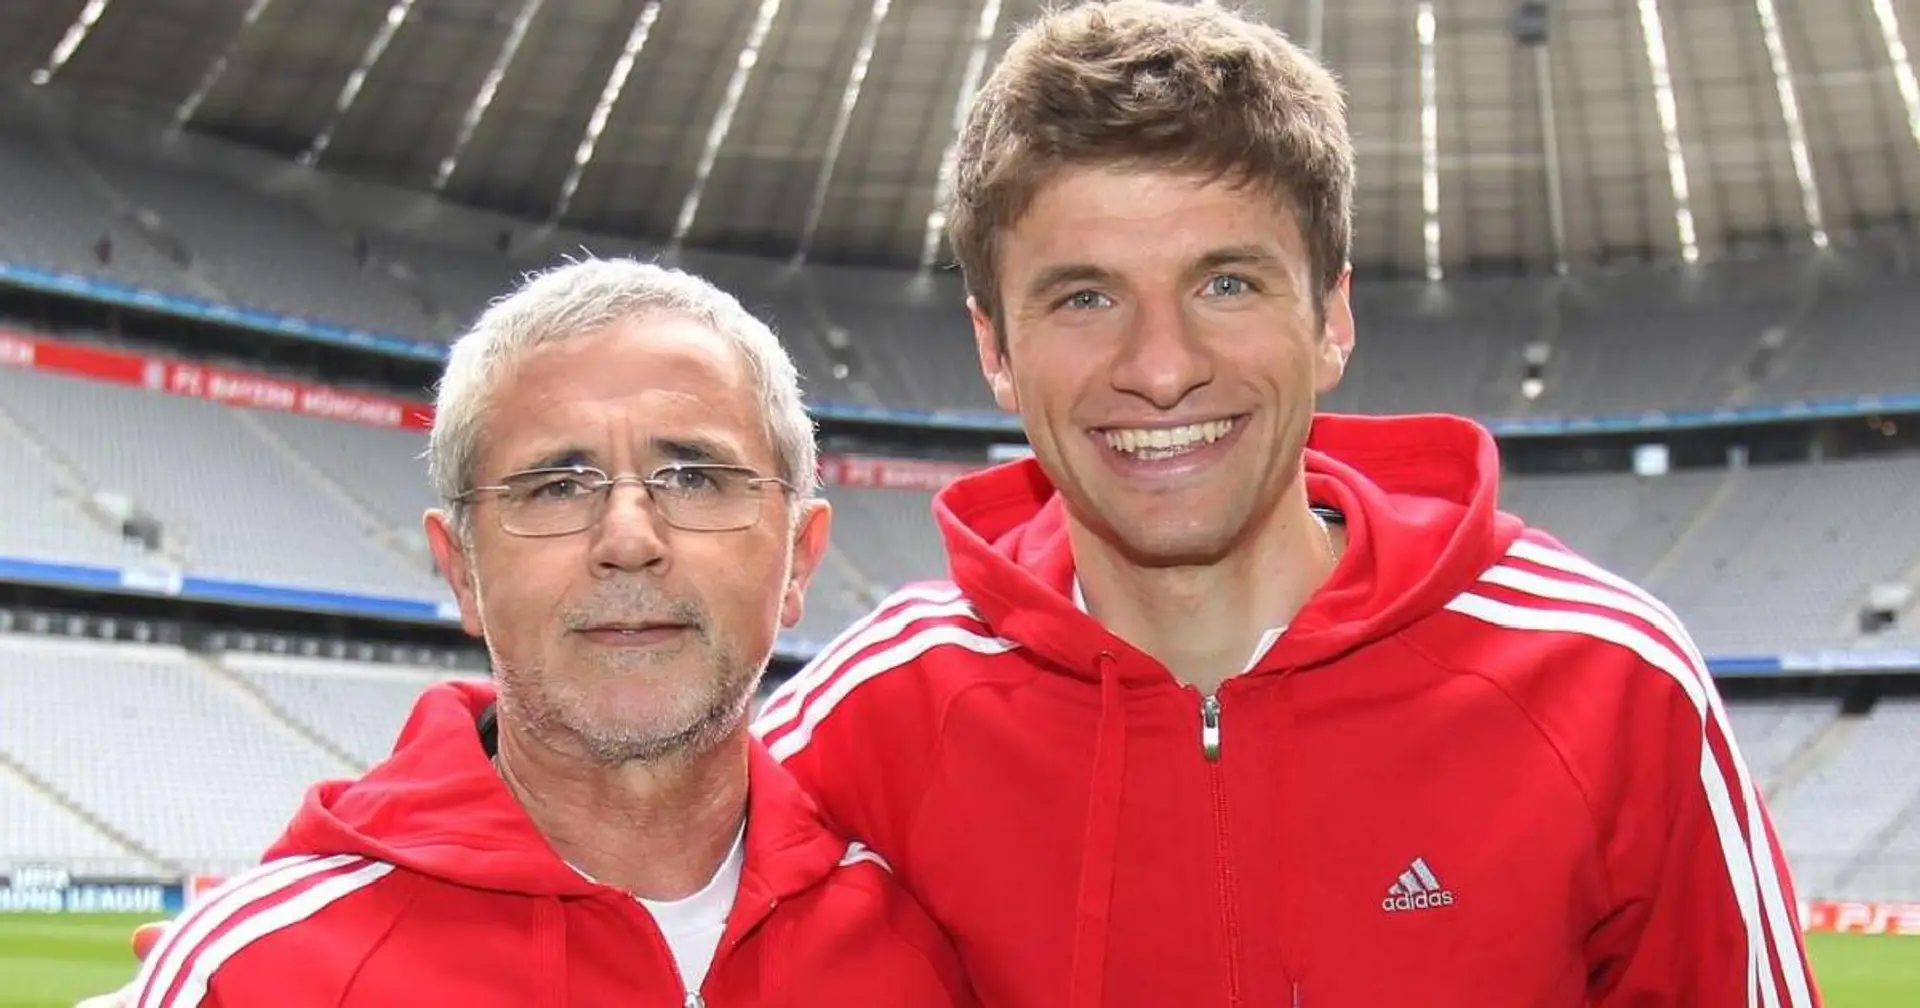 Thomas Müller: Als wir mit der 2. Mannschaft in Indien waren, hat sich dort alles nur um Gerd Müller gedreht